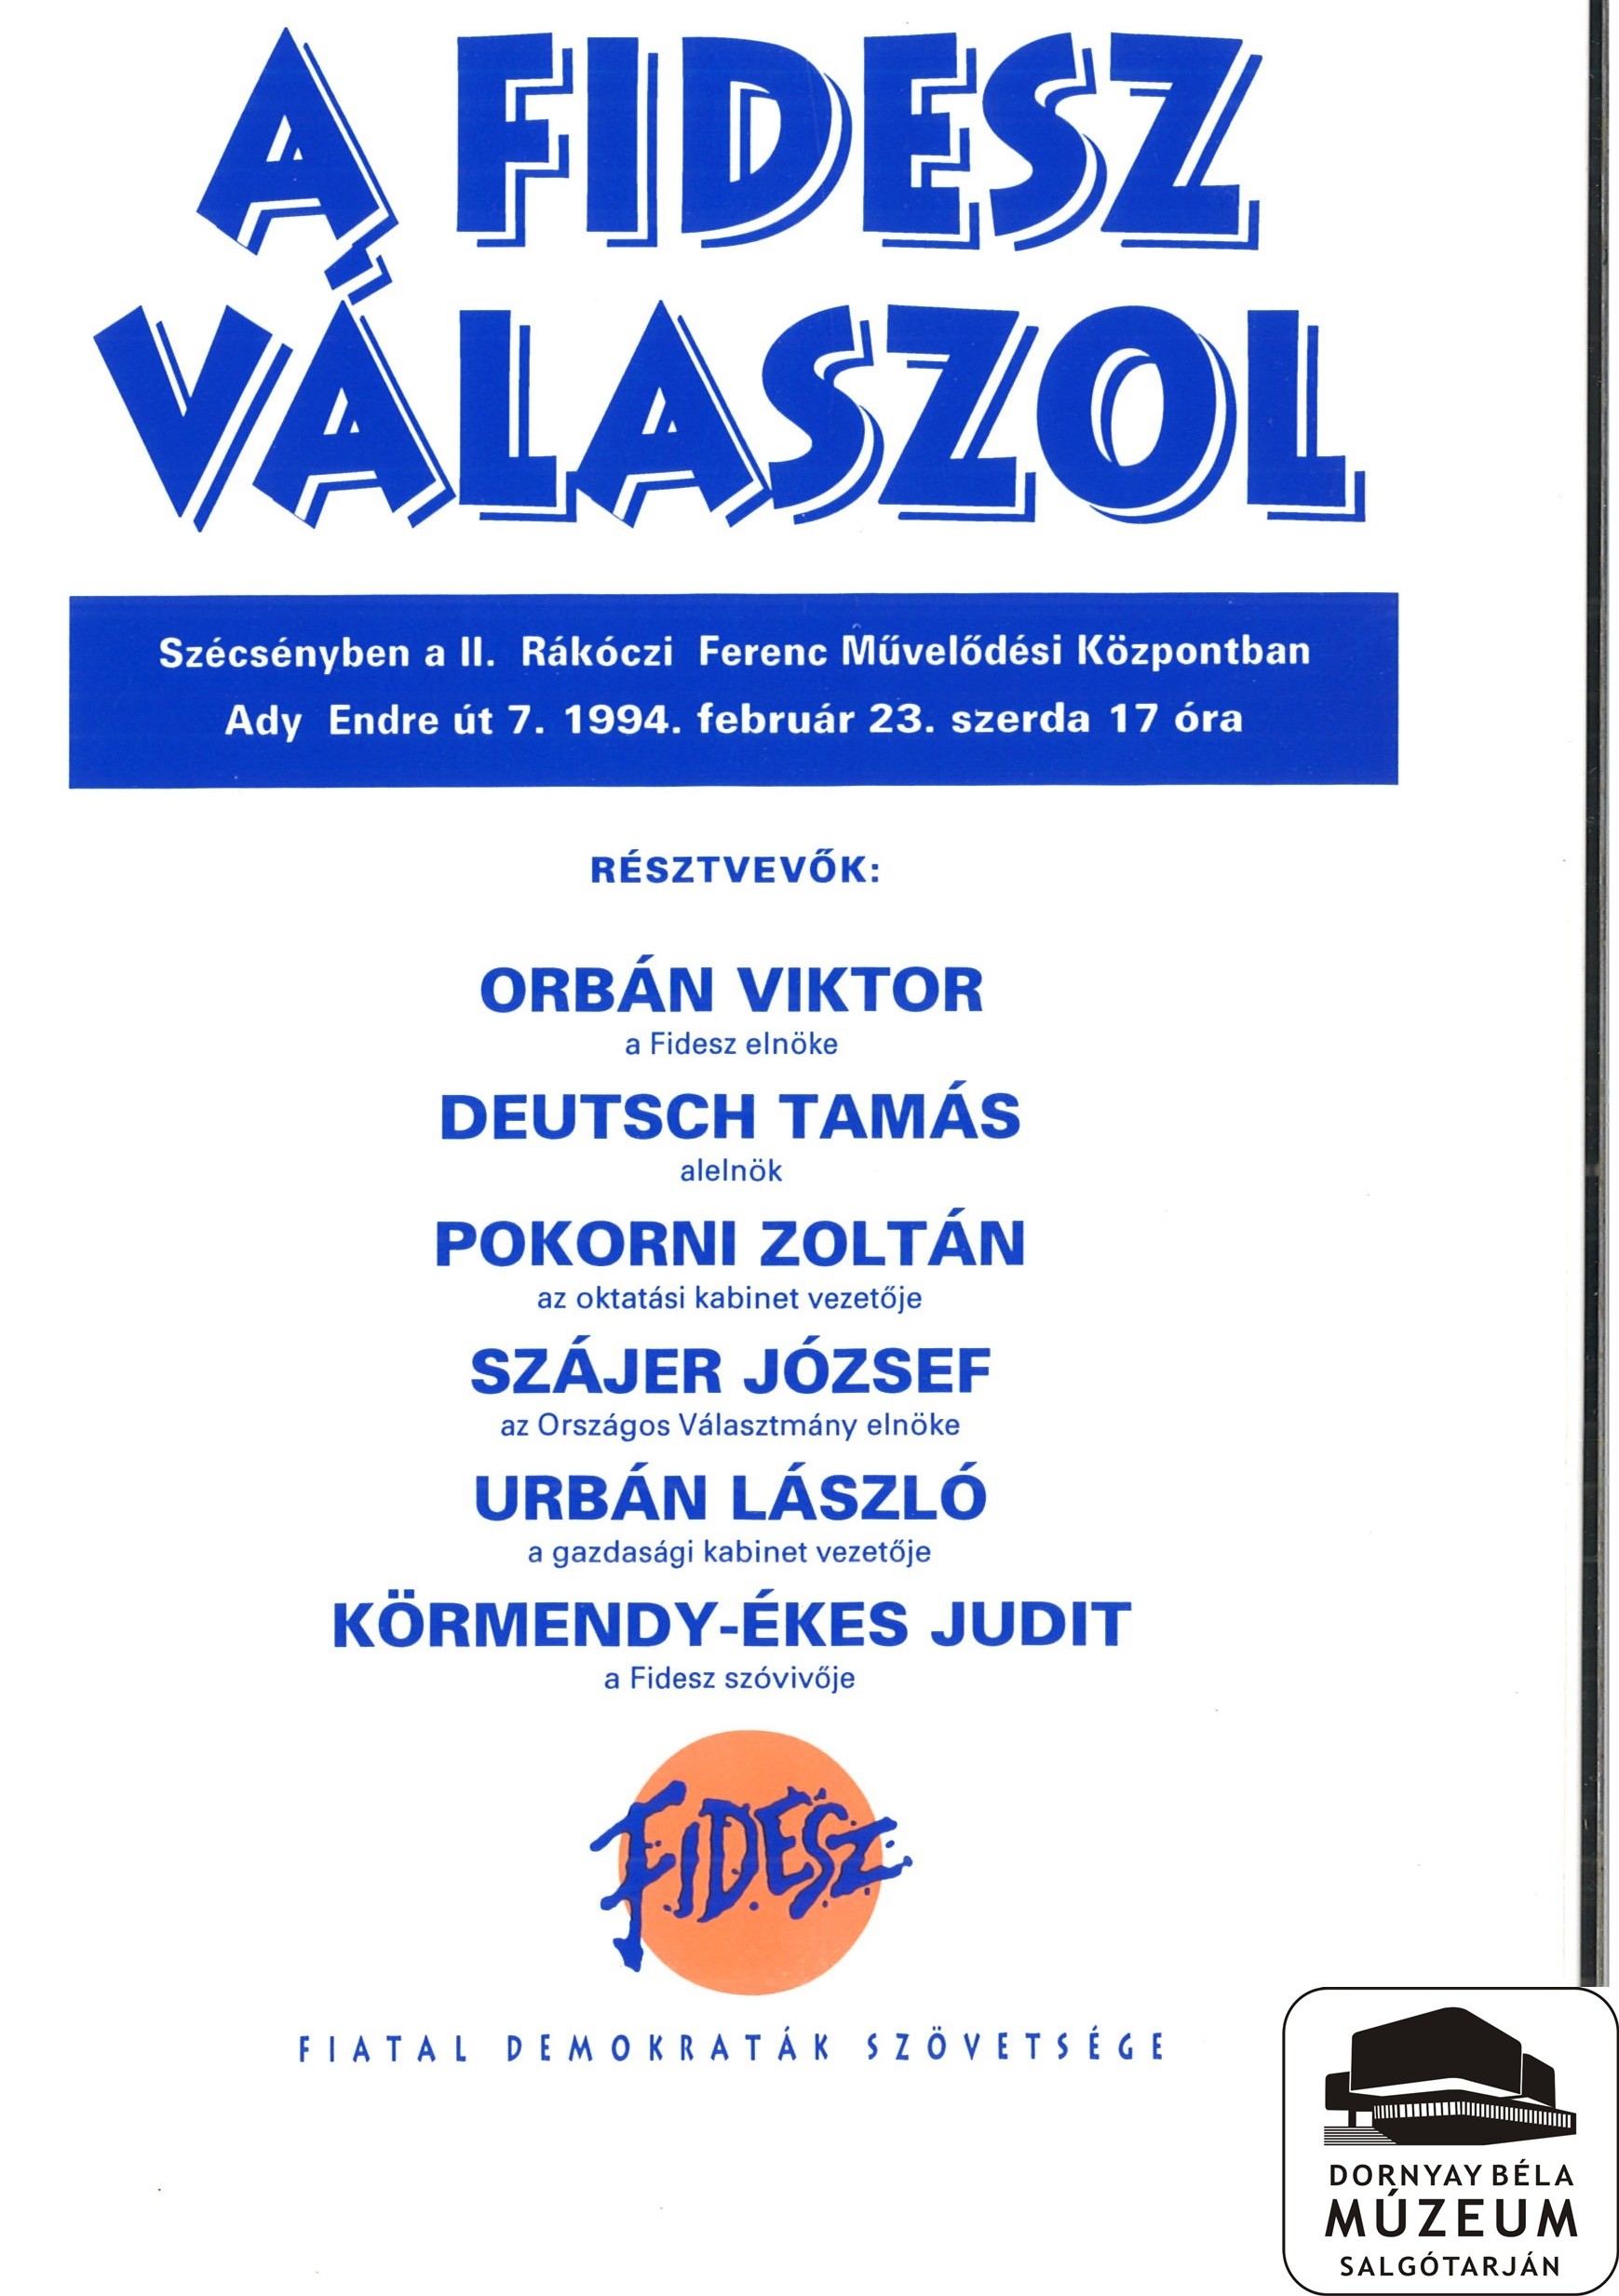 A FIDESZ válaszol Szécsényben (közli a rendezvény helyét, idejét és a résztvevők nevét) (Dornyay Béla Múzeum, Salgótarján CC BY-NC-SA)